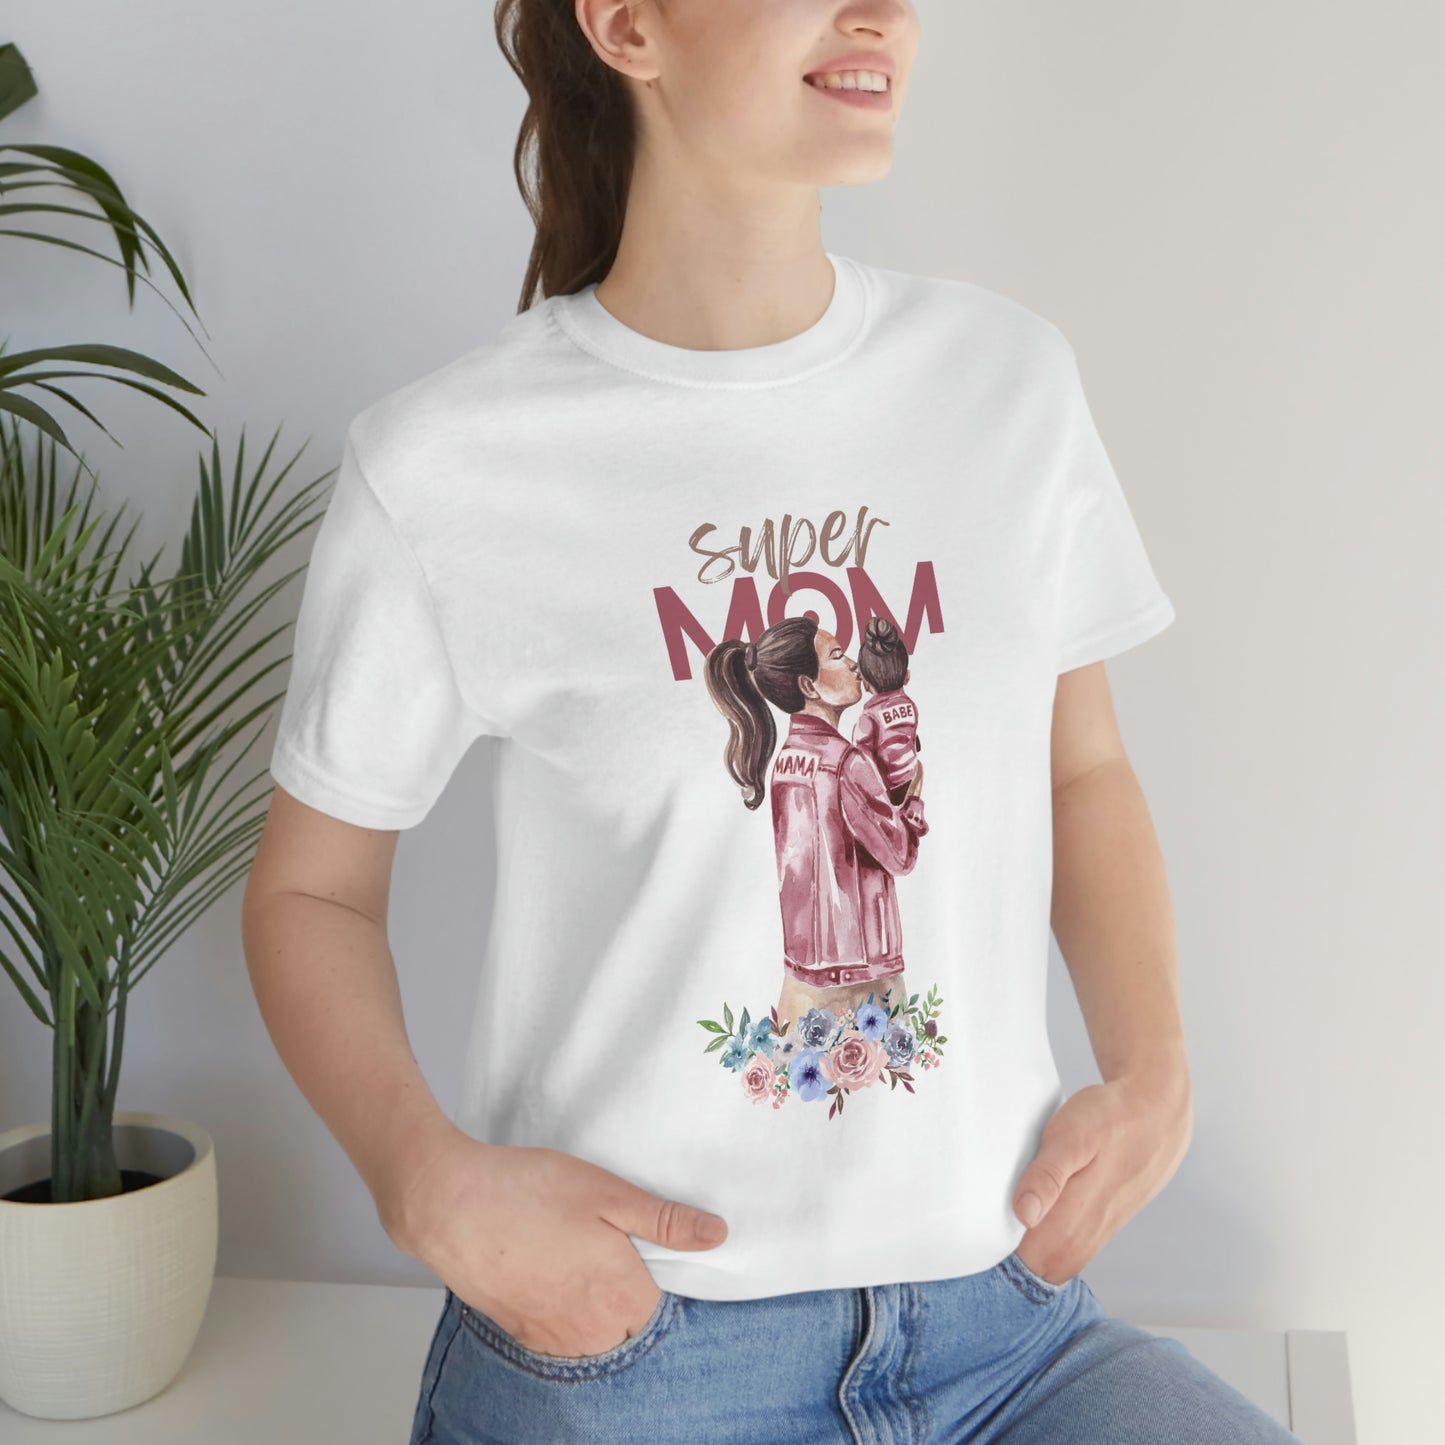 Super Mom Women T-shirt